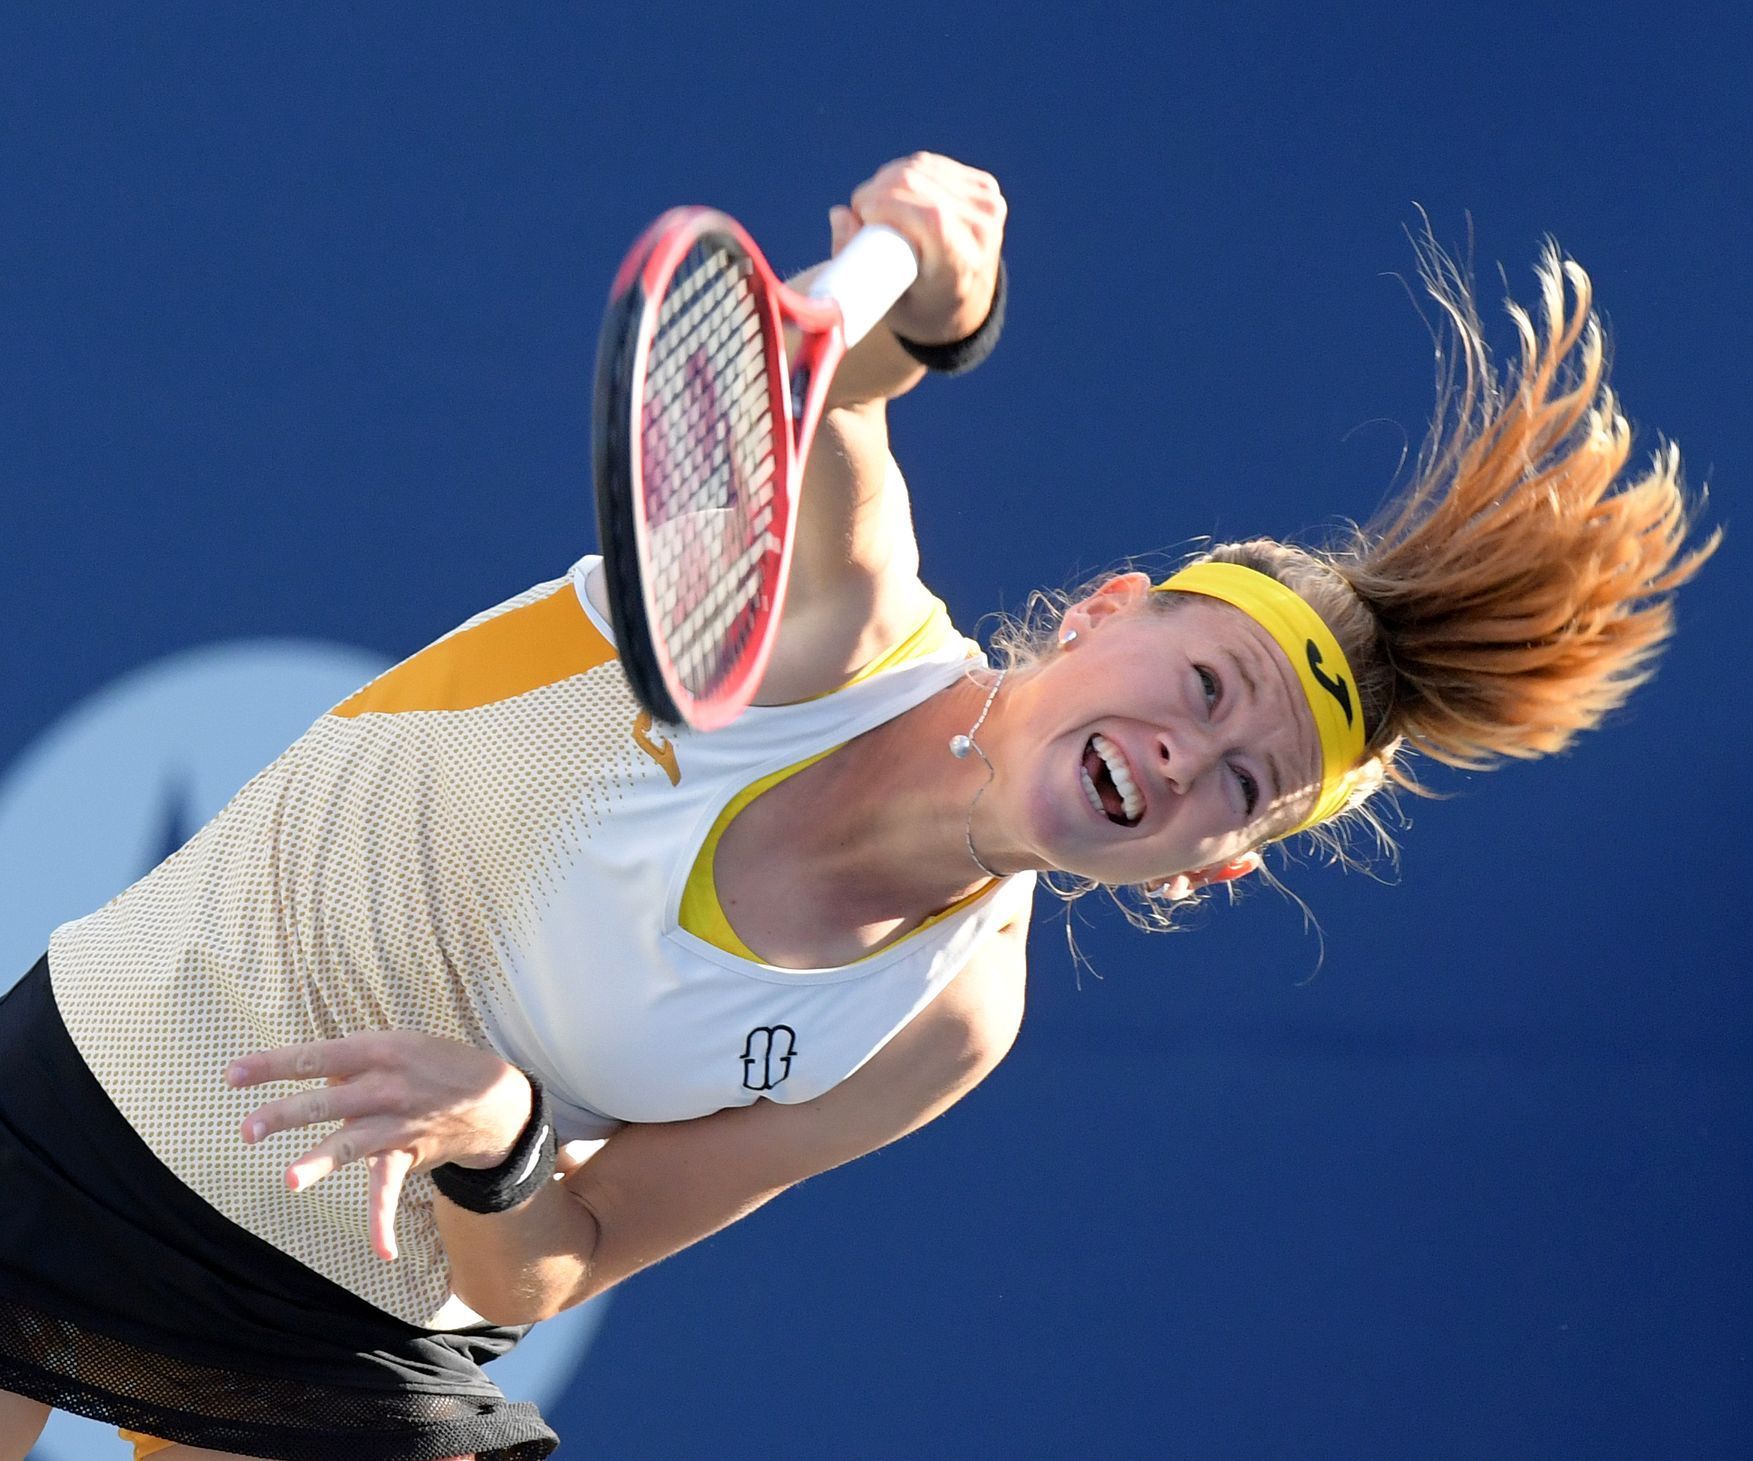 Marie Bouzková v semifinále turnaje Torontu 2019 proti Sereně Williamsové